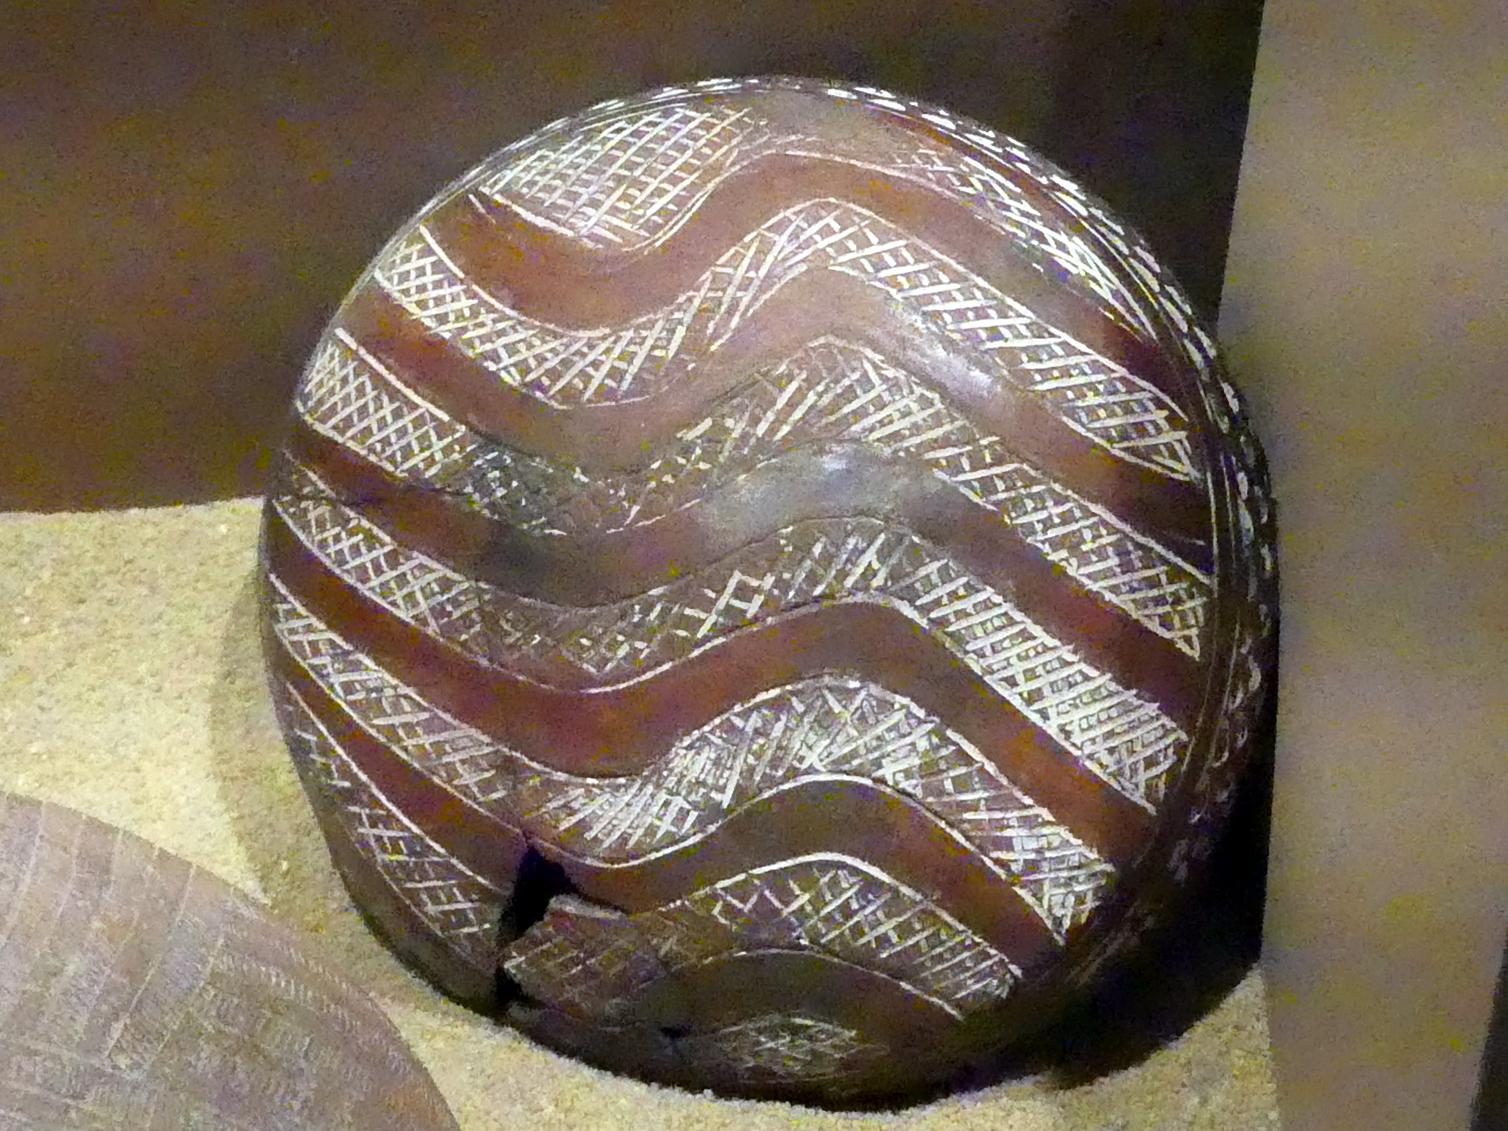 Schale mit geritzten Punkten und Wellenbändern, weiß eingerieben, C-Gruppe, 1900 - 1550 v. Chr., 1900 - 1700 v. Chr.